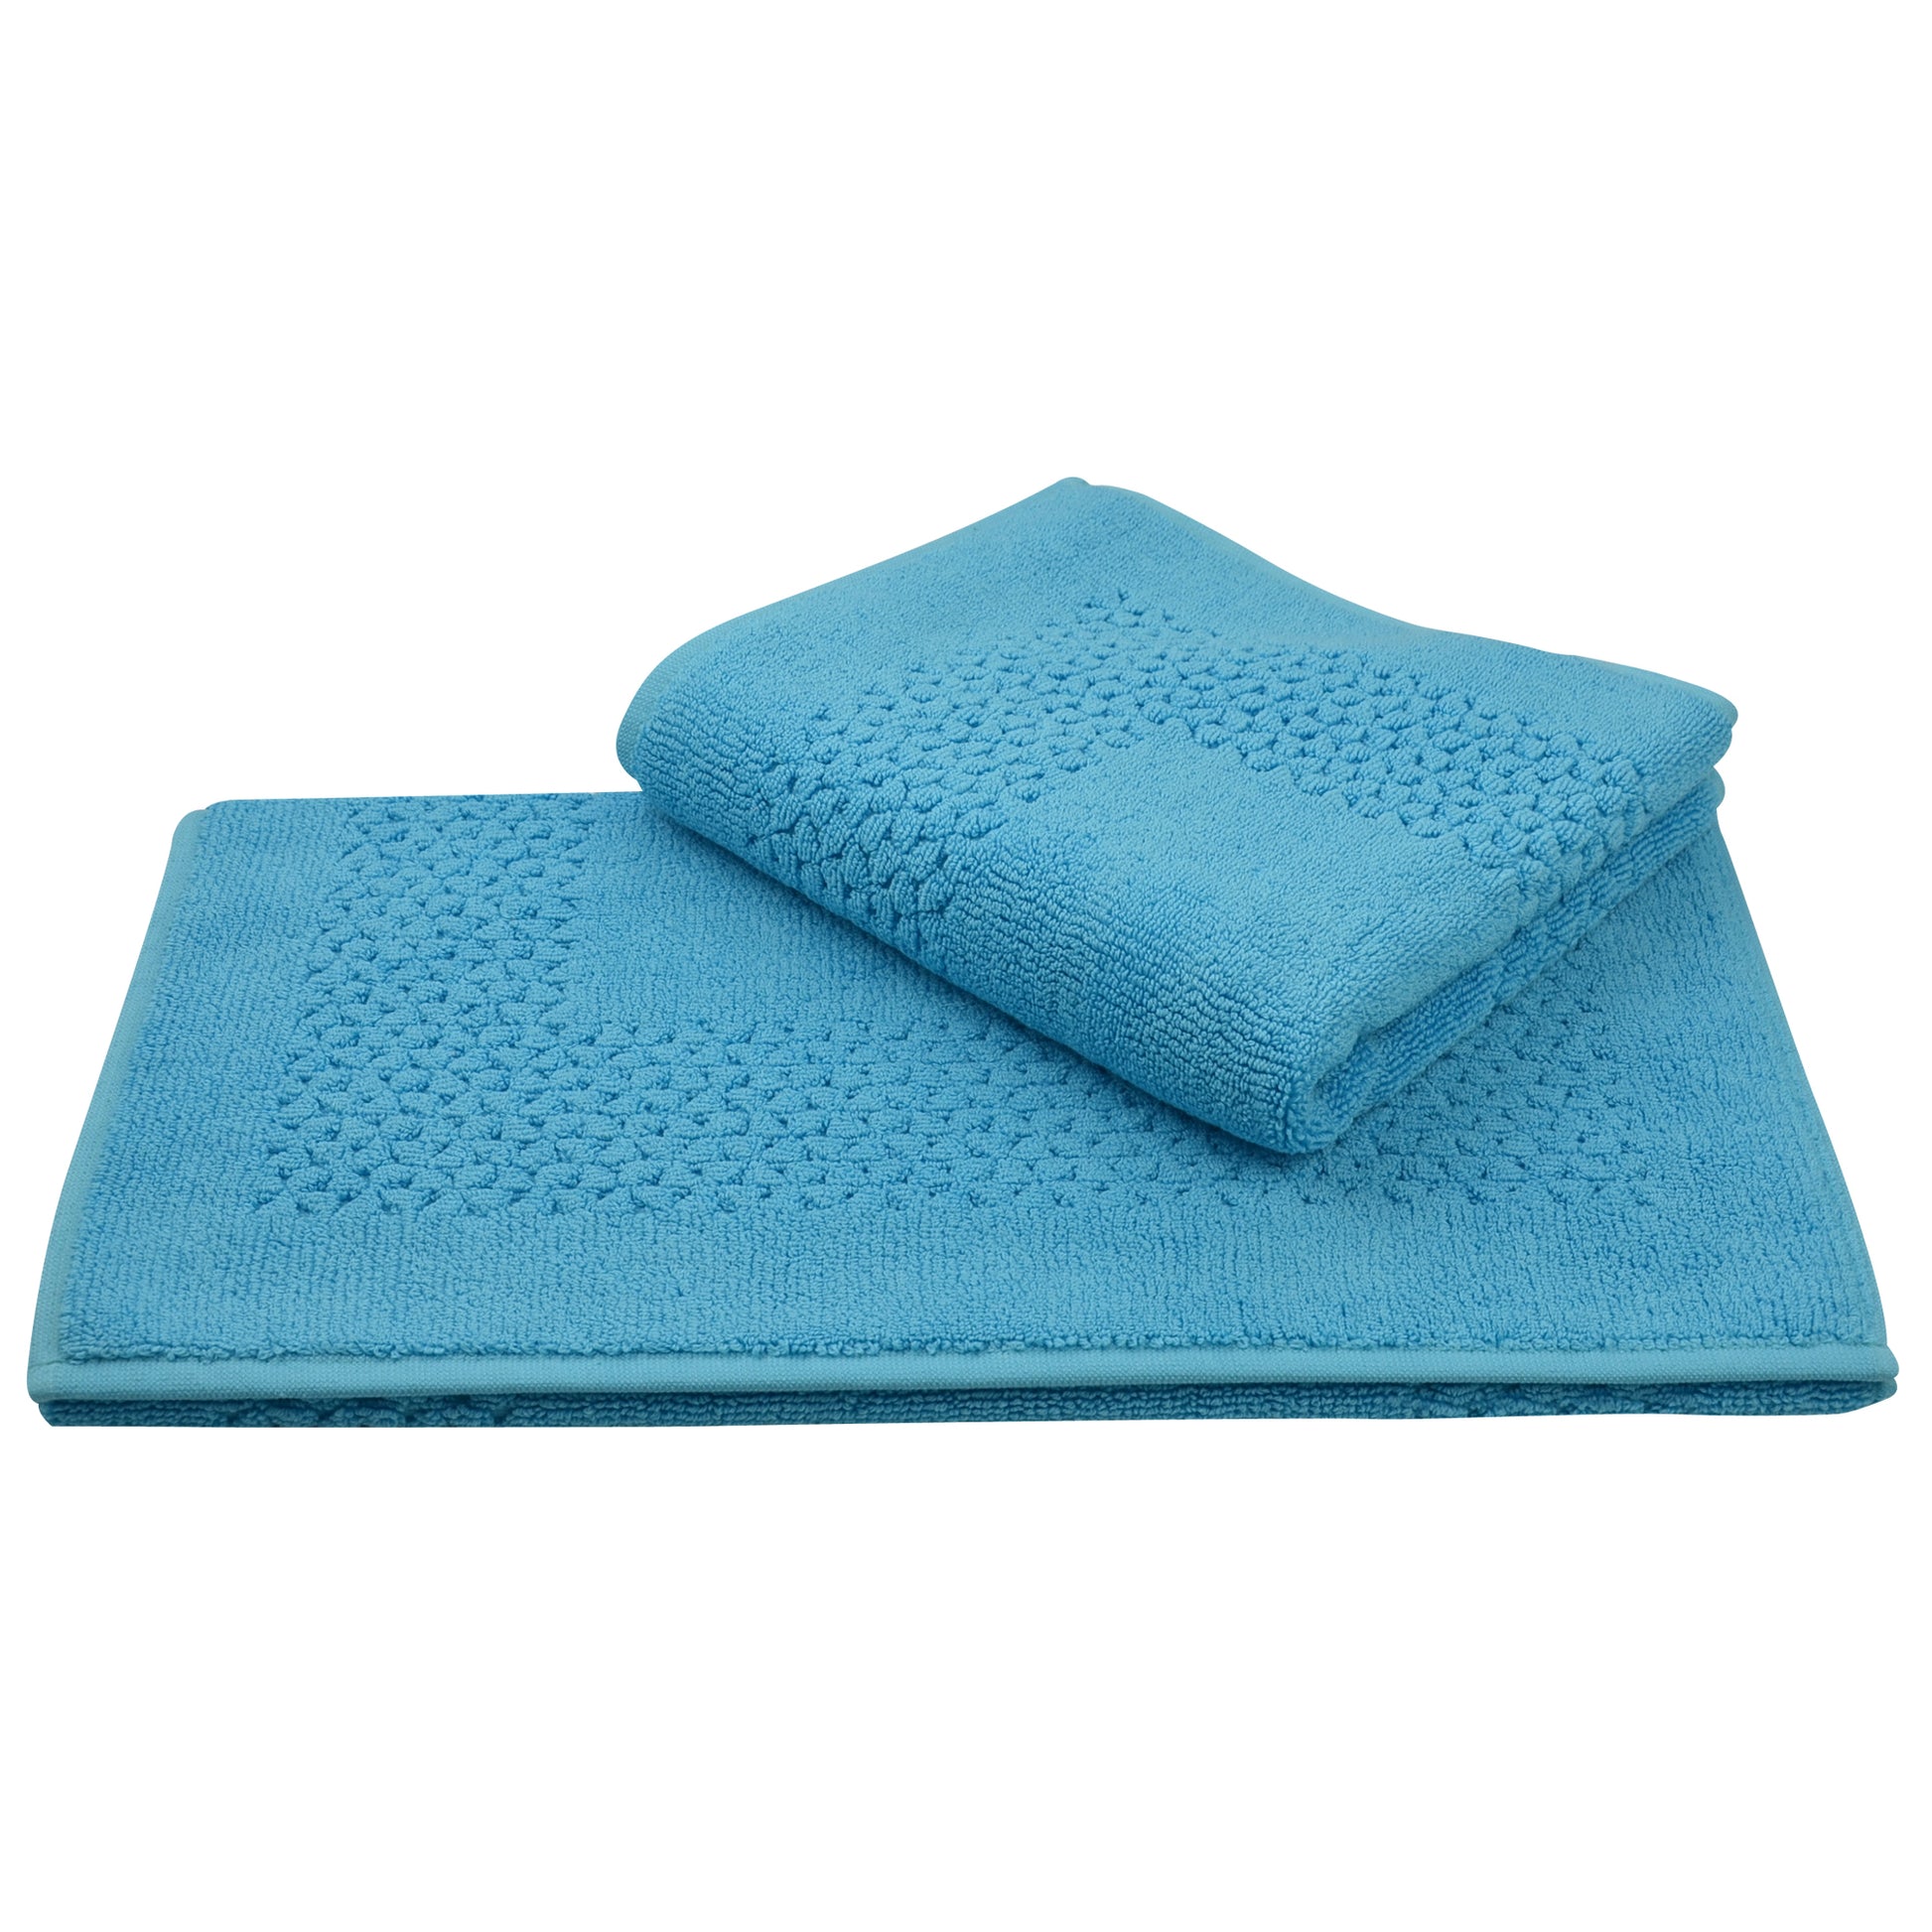 Mei-Tal Turkish Cotton Bath Mat - 2 Pieces - Classic Turkish Towels